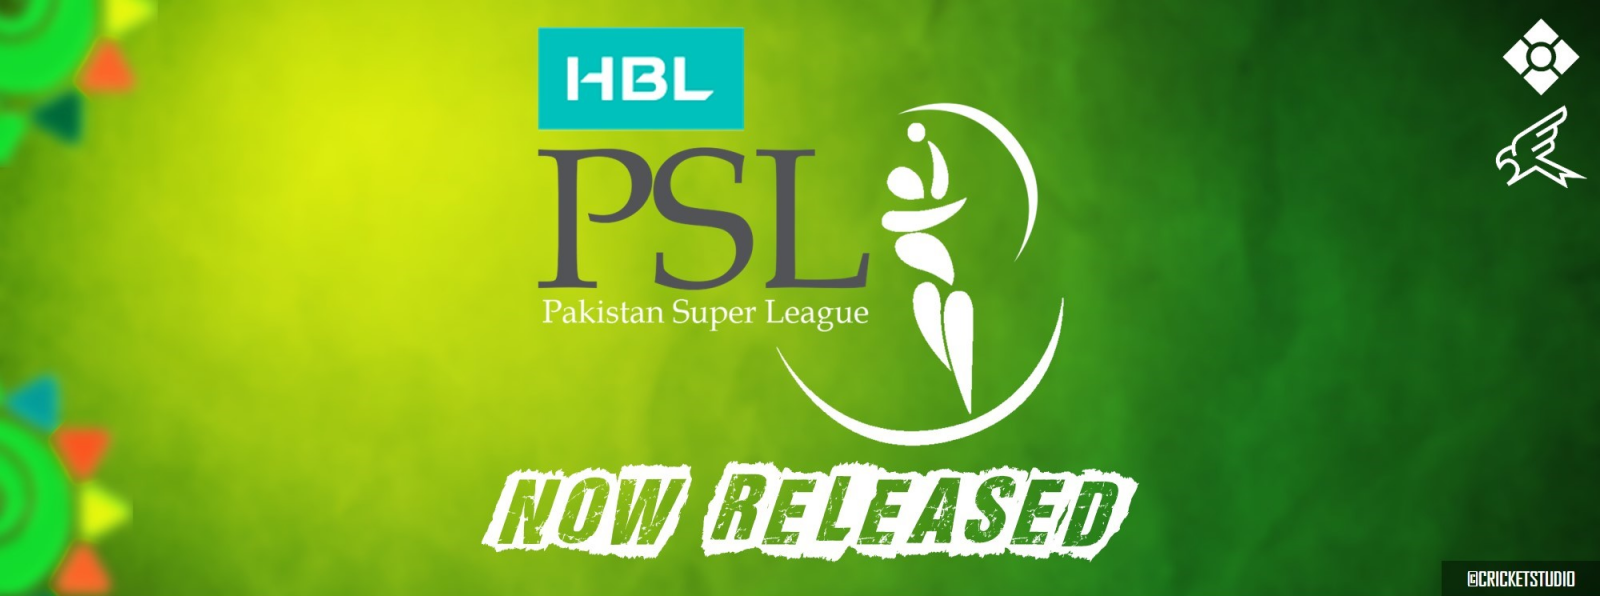 PSL1 Pakistan Super League 2016 Patch for EA Cricket 07 ...